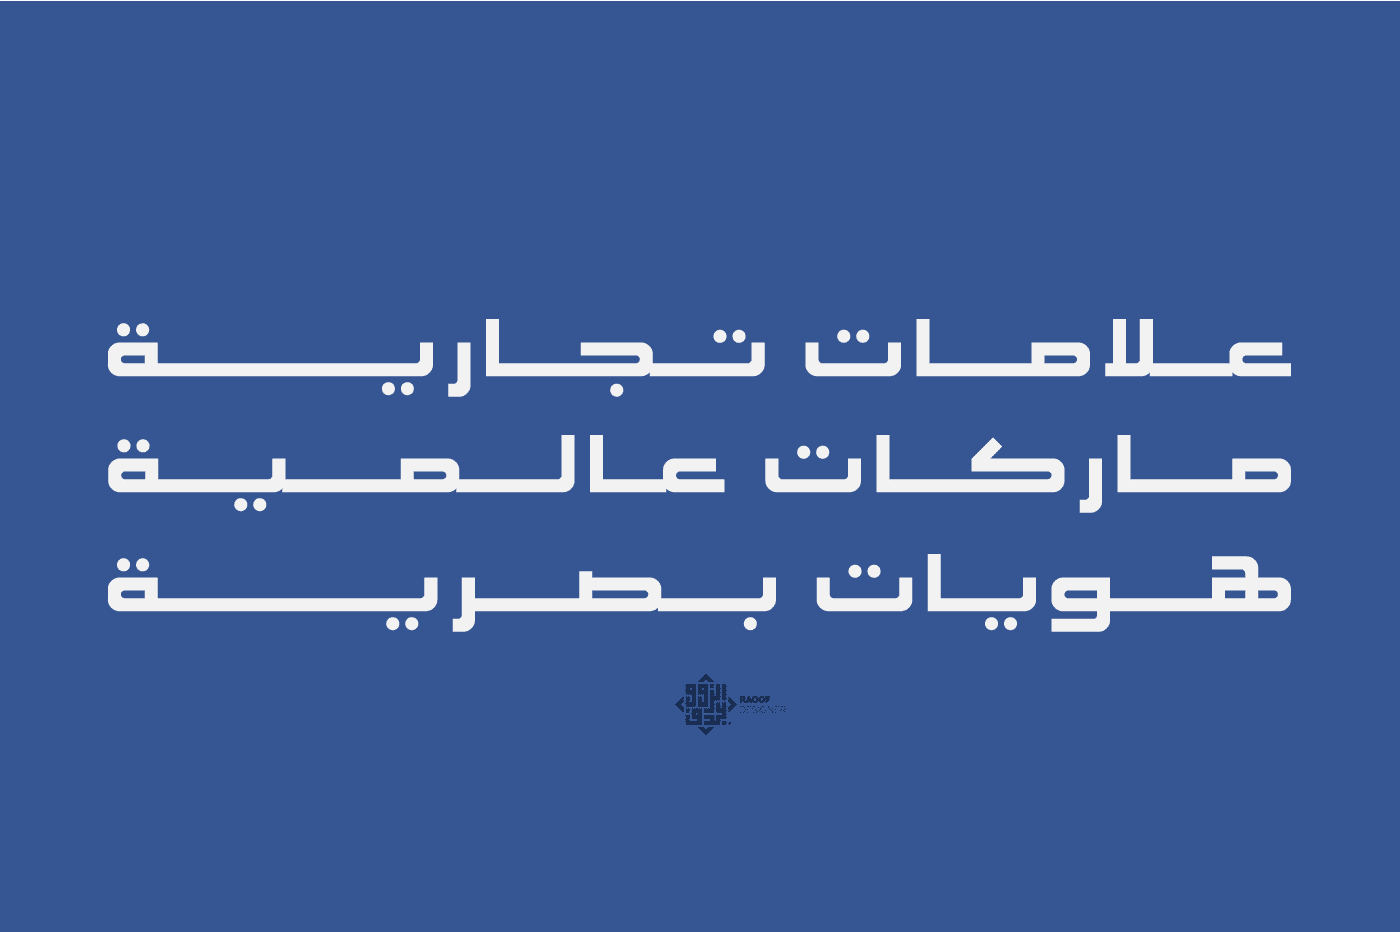 تحميل خط كشيدة العربي الرائع بوزنين مختلفين - Download kasheed font